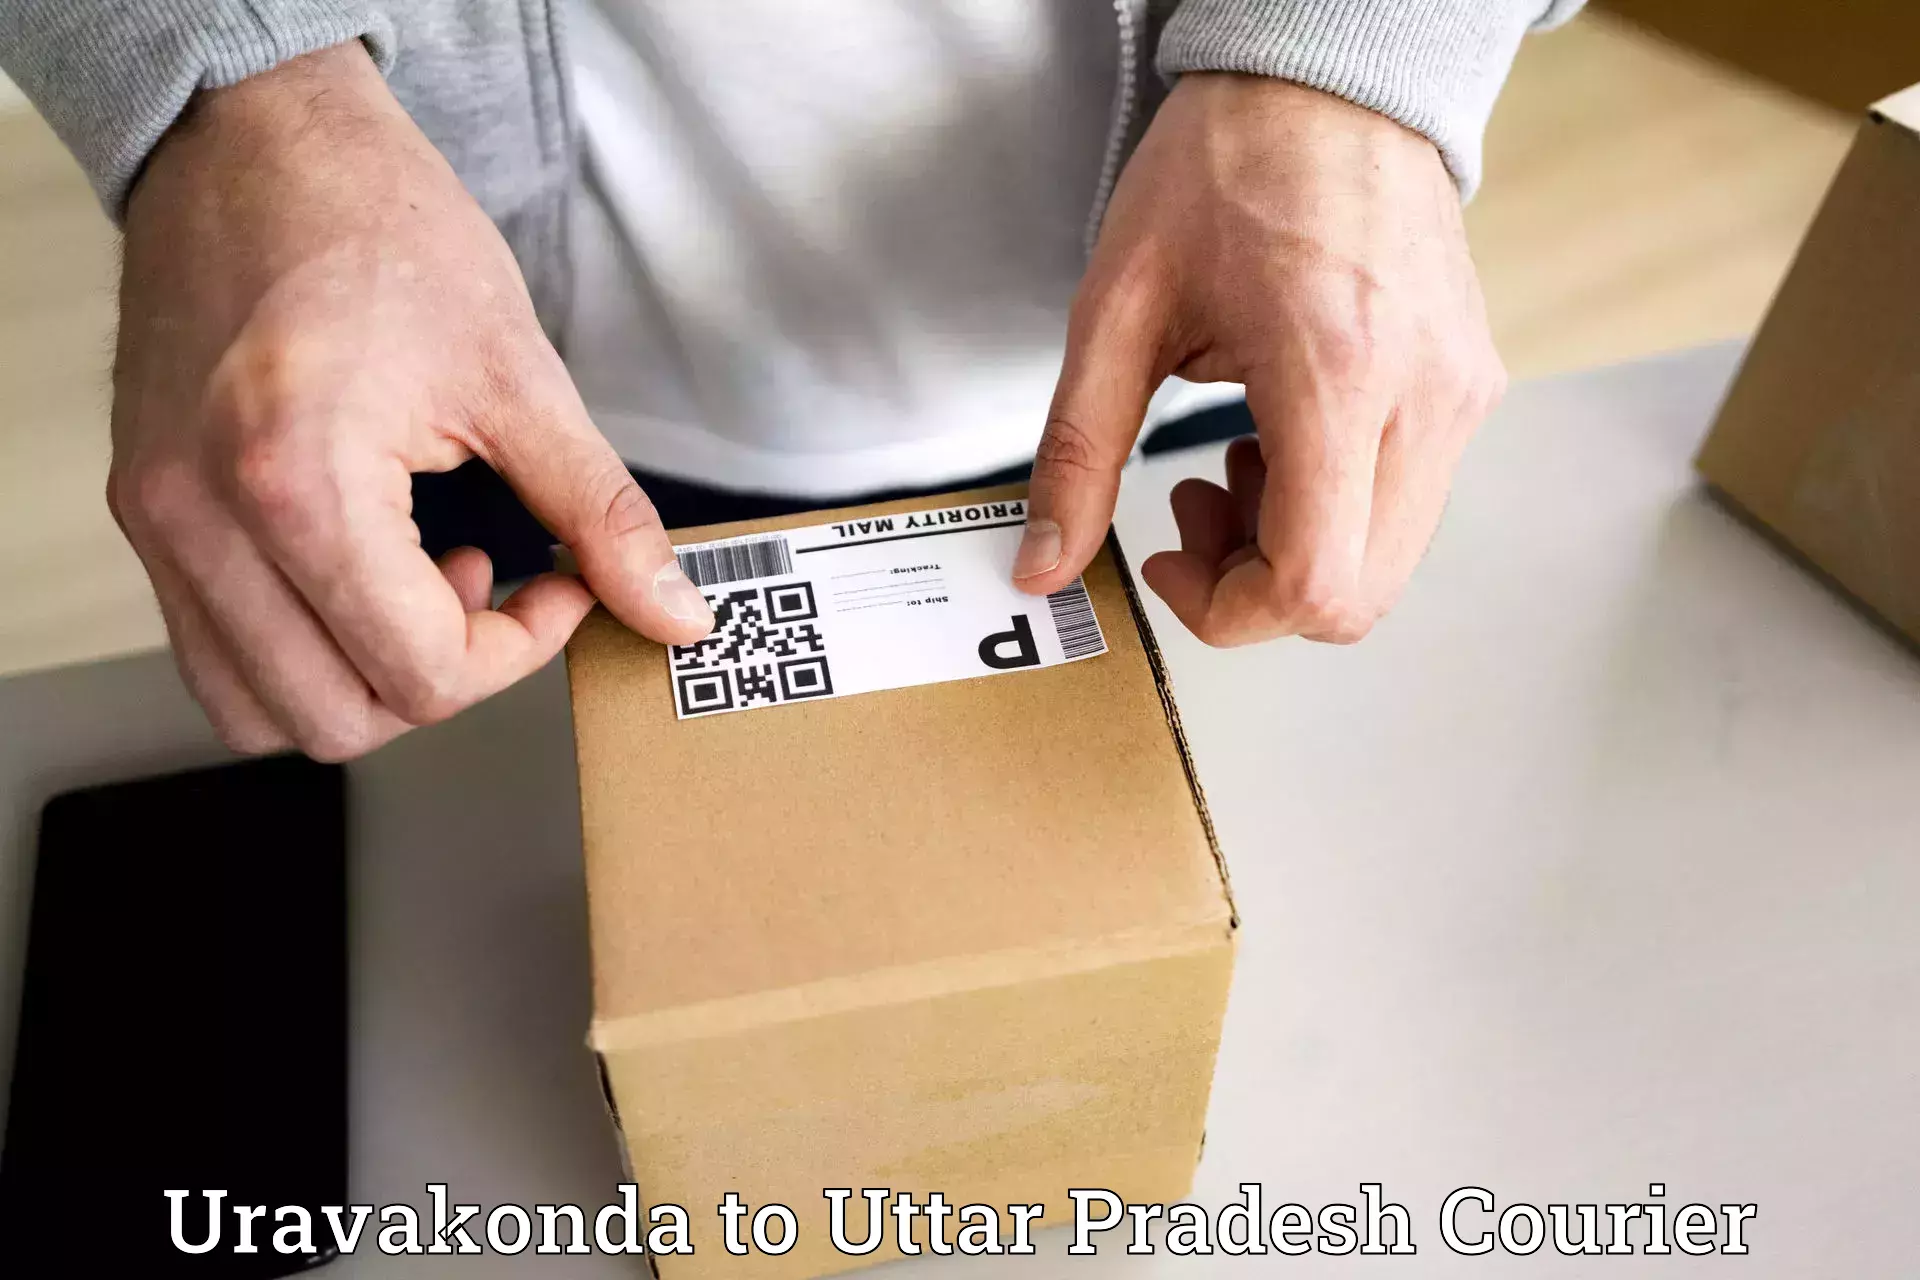 User-friendly courier app Uravakonda to Kerakat